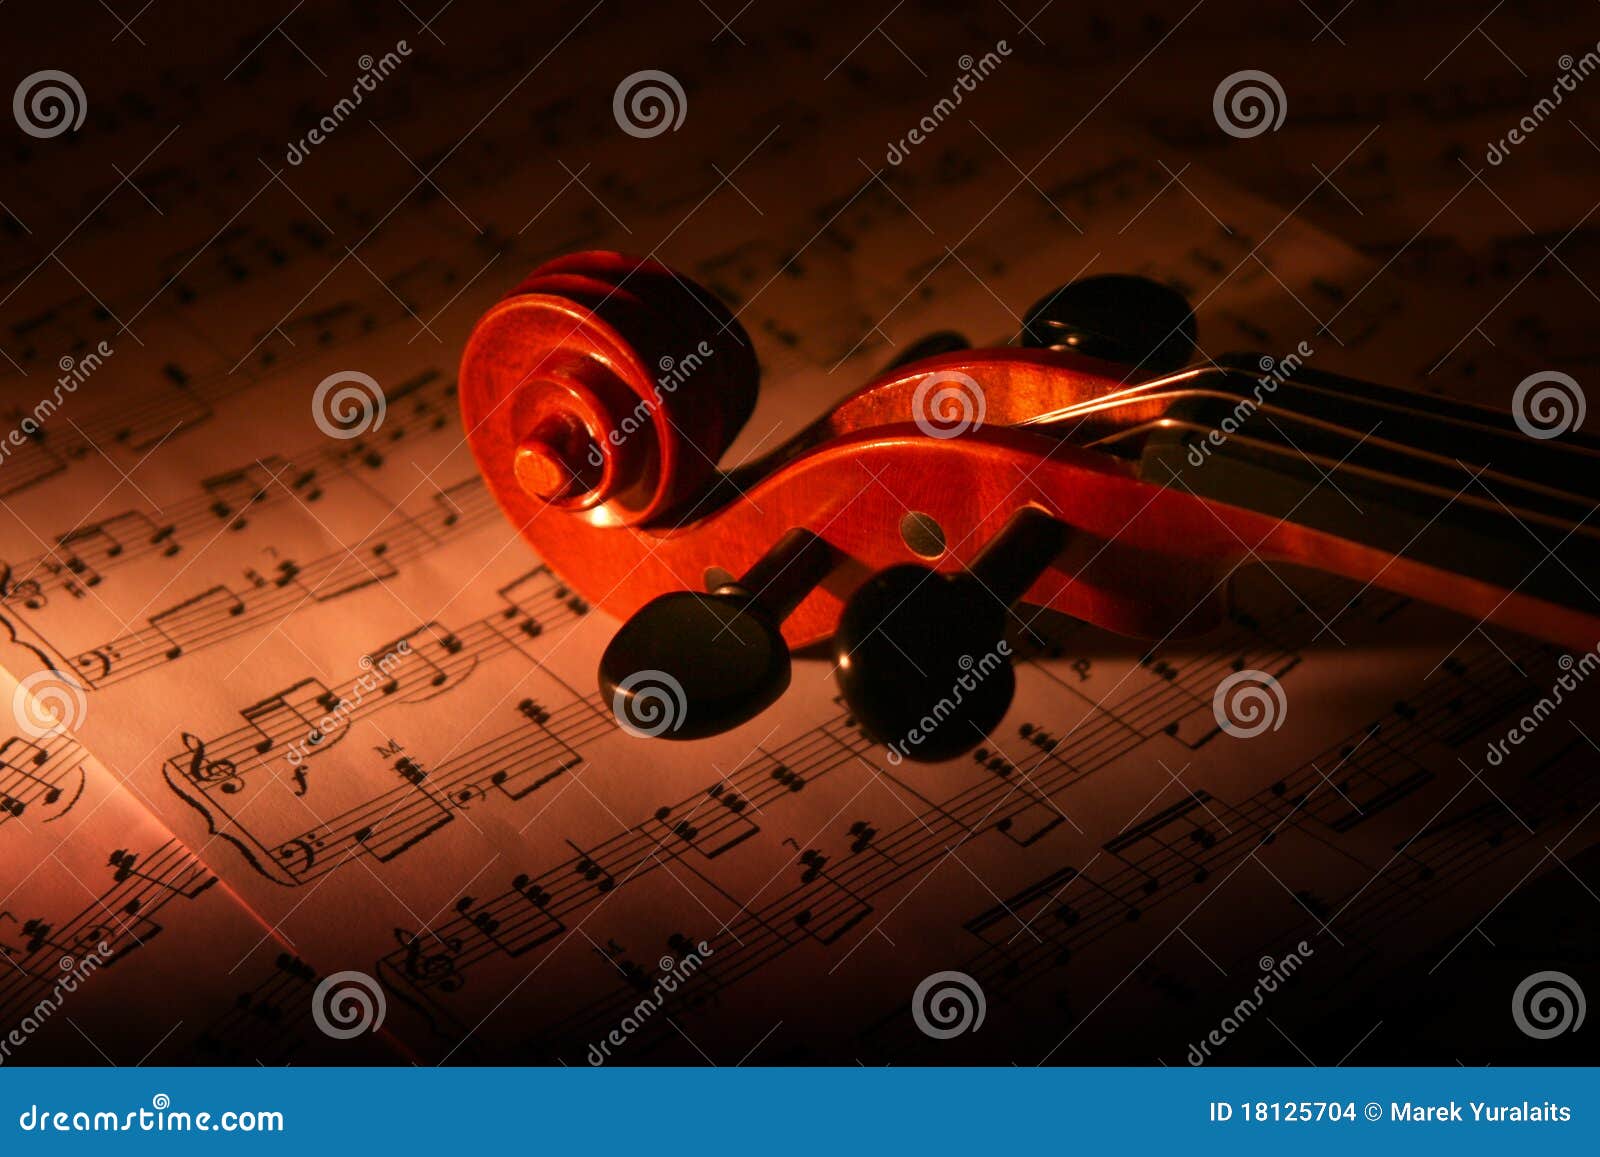 violin and music sheet